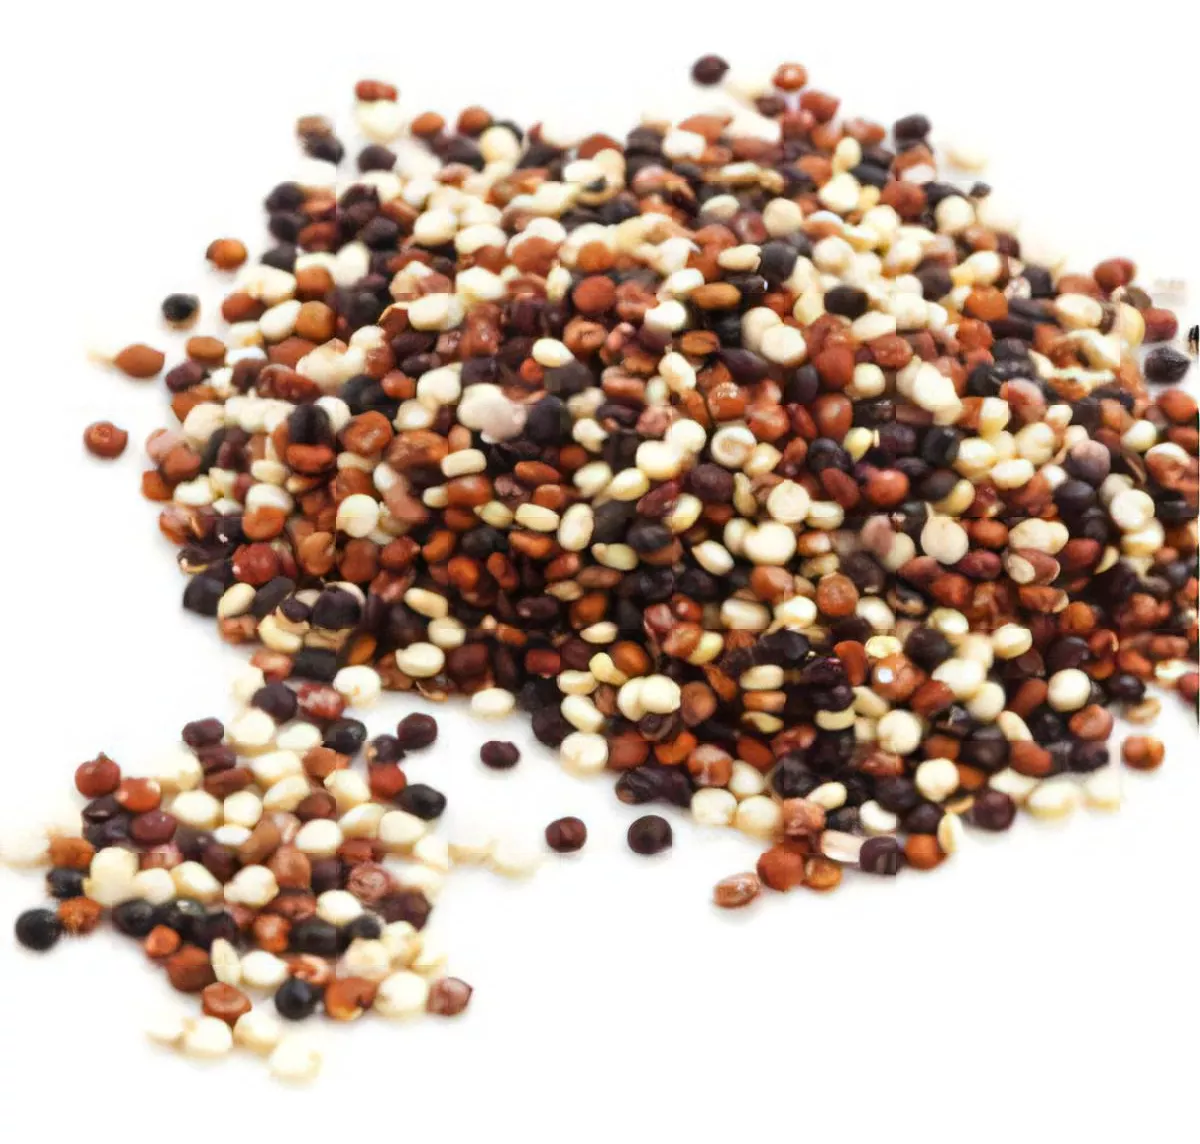 Segunda imagem para pesquisa de quinoa